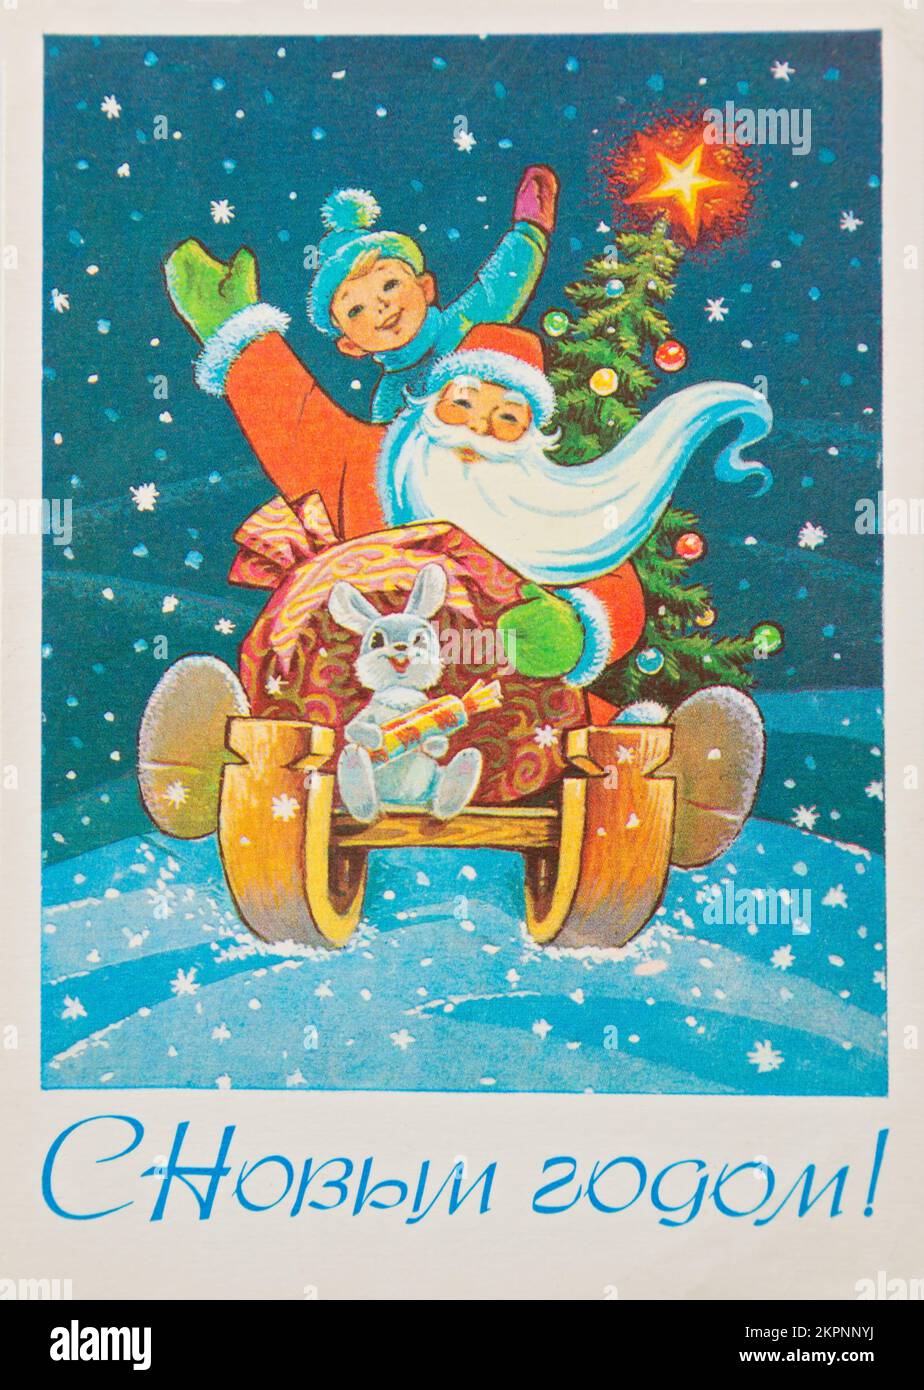 UdSSR-CIRCA 1990: Reproduktion einer antiken Postkarte zeigt einen weihnachtsmann mit einem Jungen, einem Kaninchen und einem weihnachtsbaum auf einem Schlitten: Russischer Text: Happy New Stockfoto